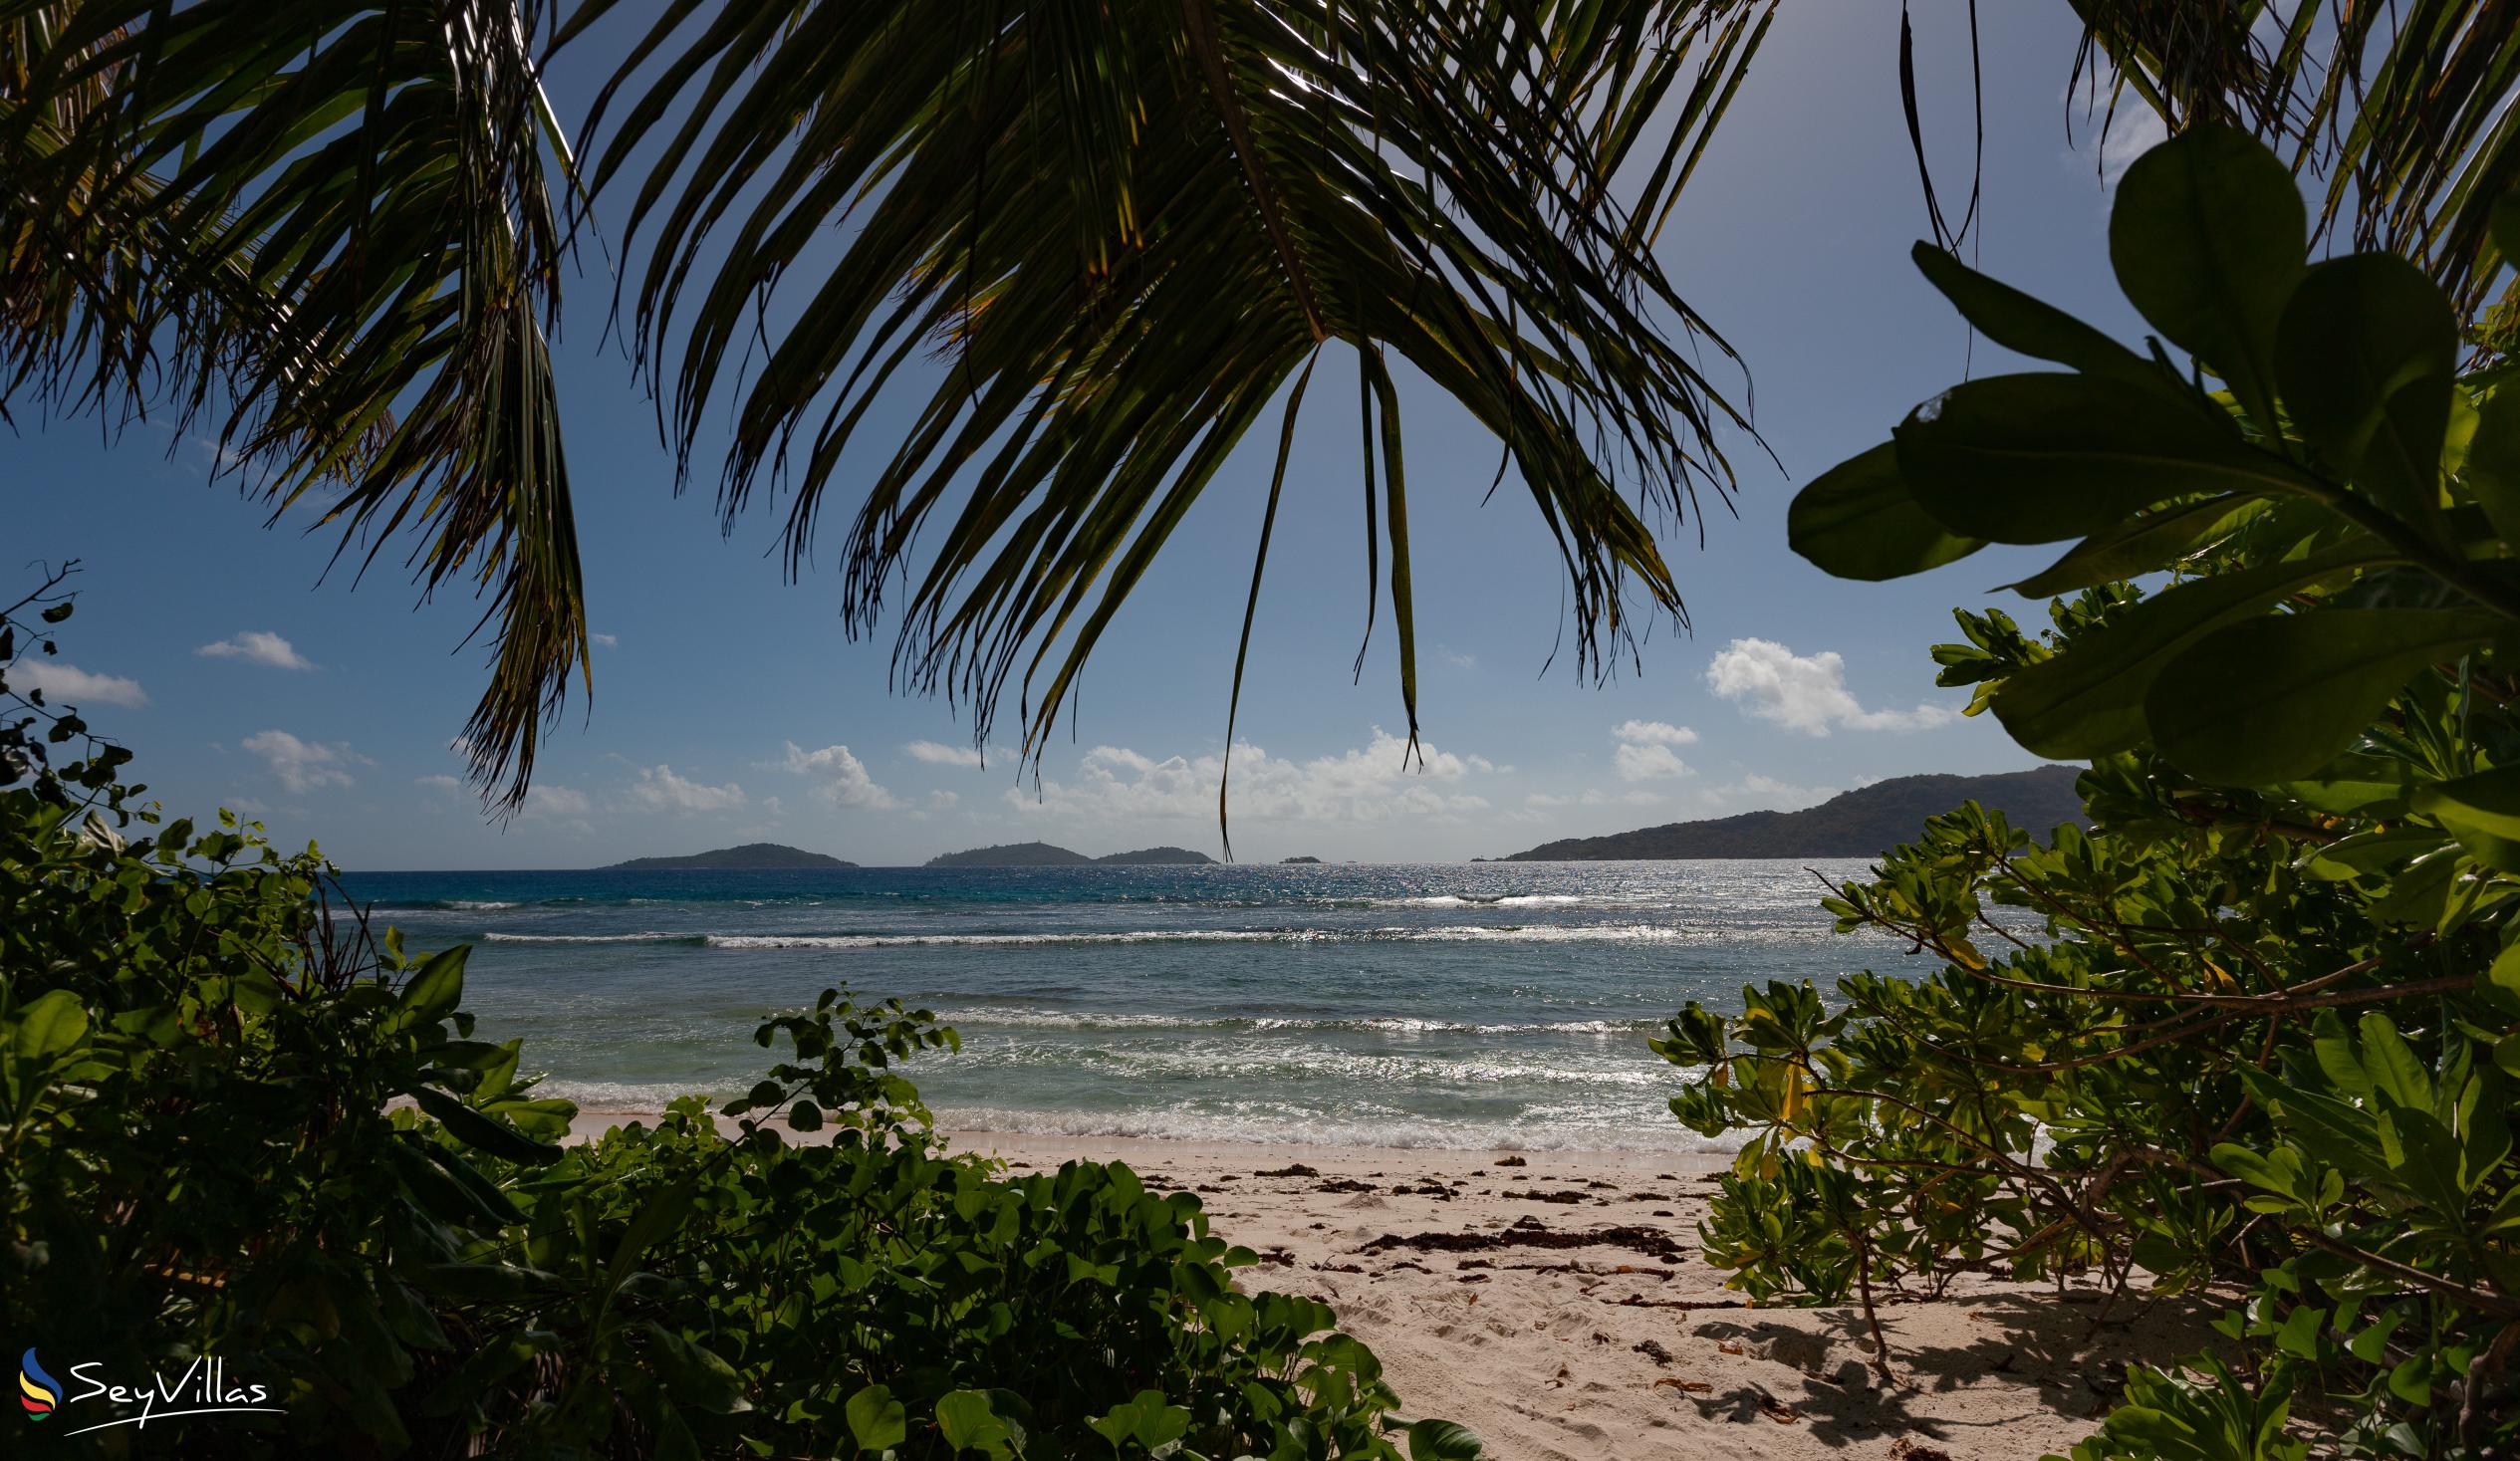 Photo 24: Lakaz An Bwa - Location - La Digue (Seychelles)